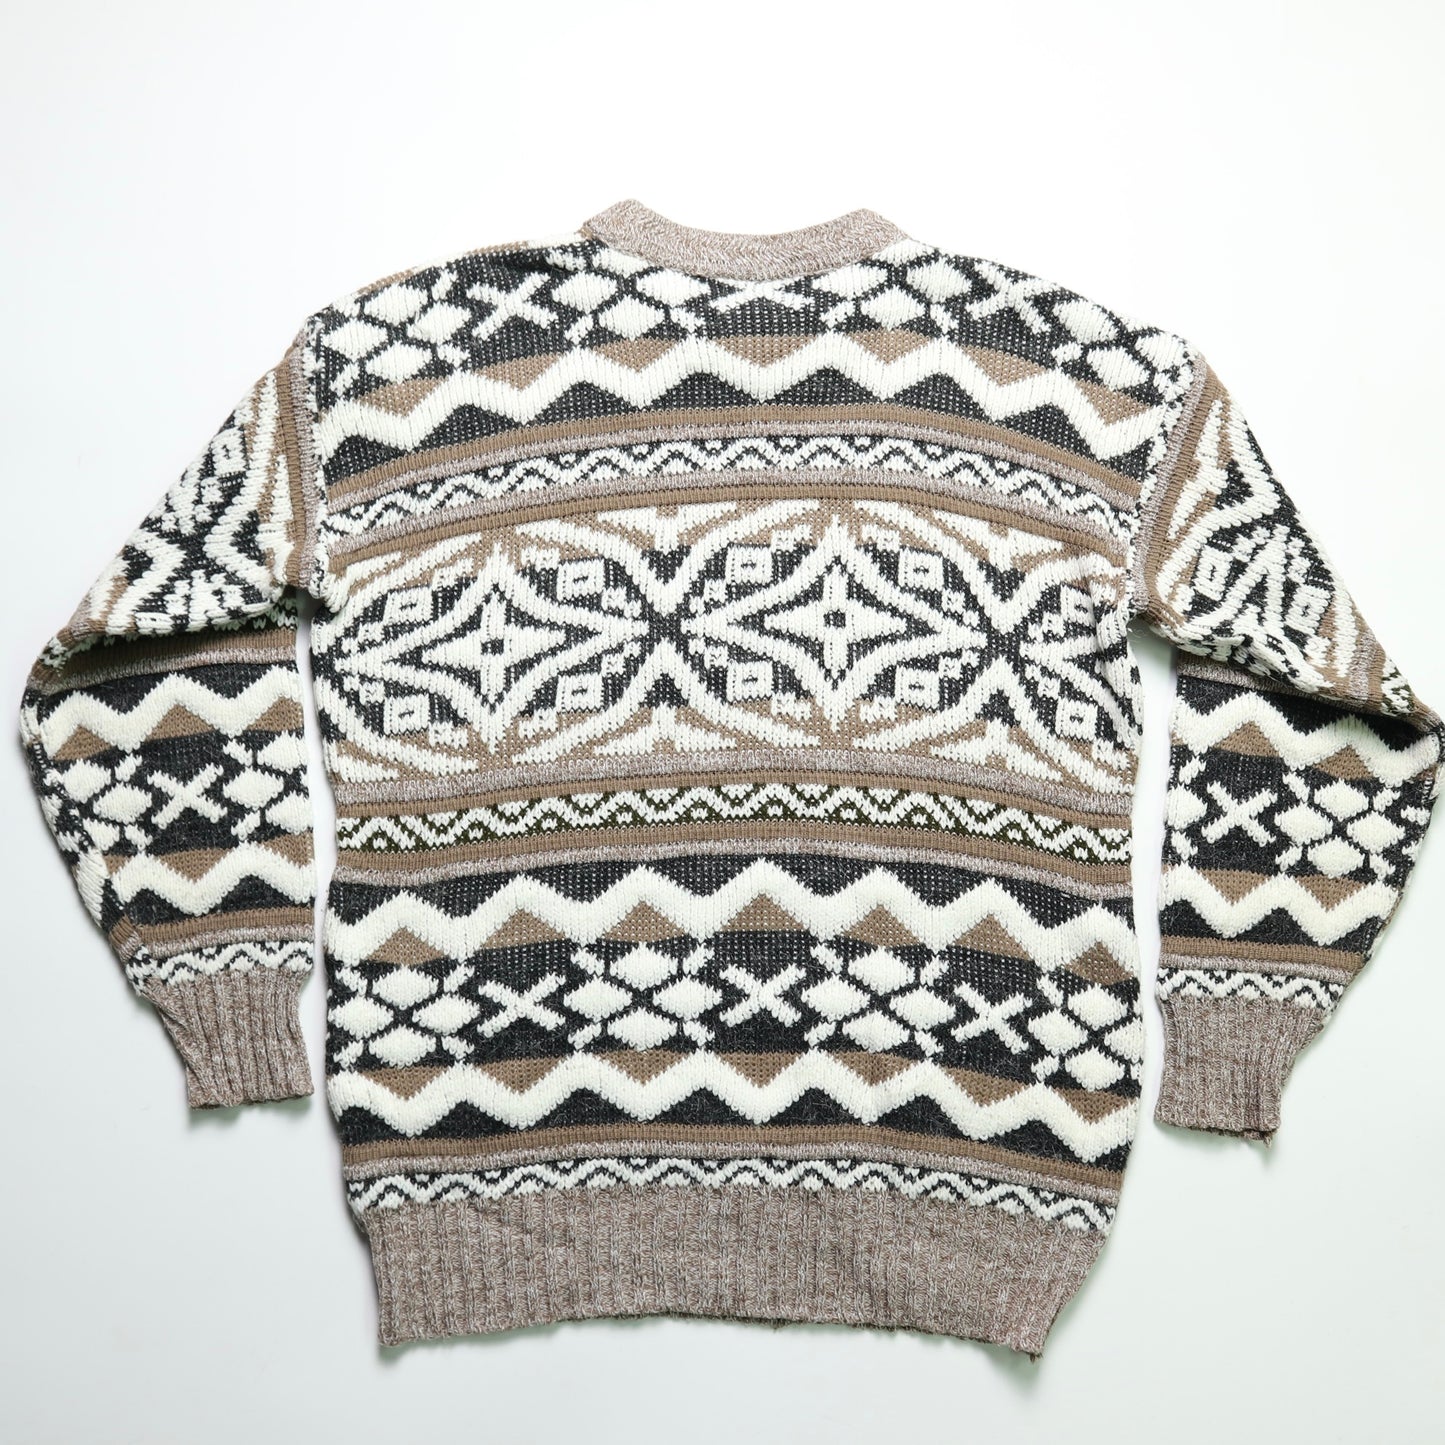 British Made Khaki Geometric Figure Sweater Knit Sweater